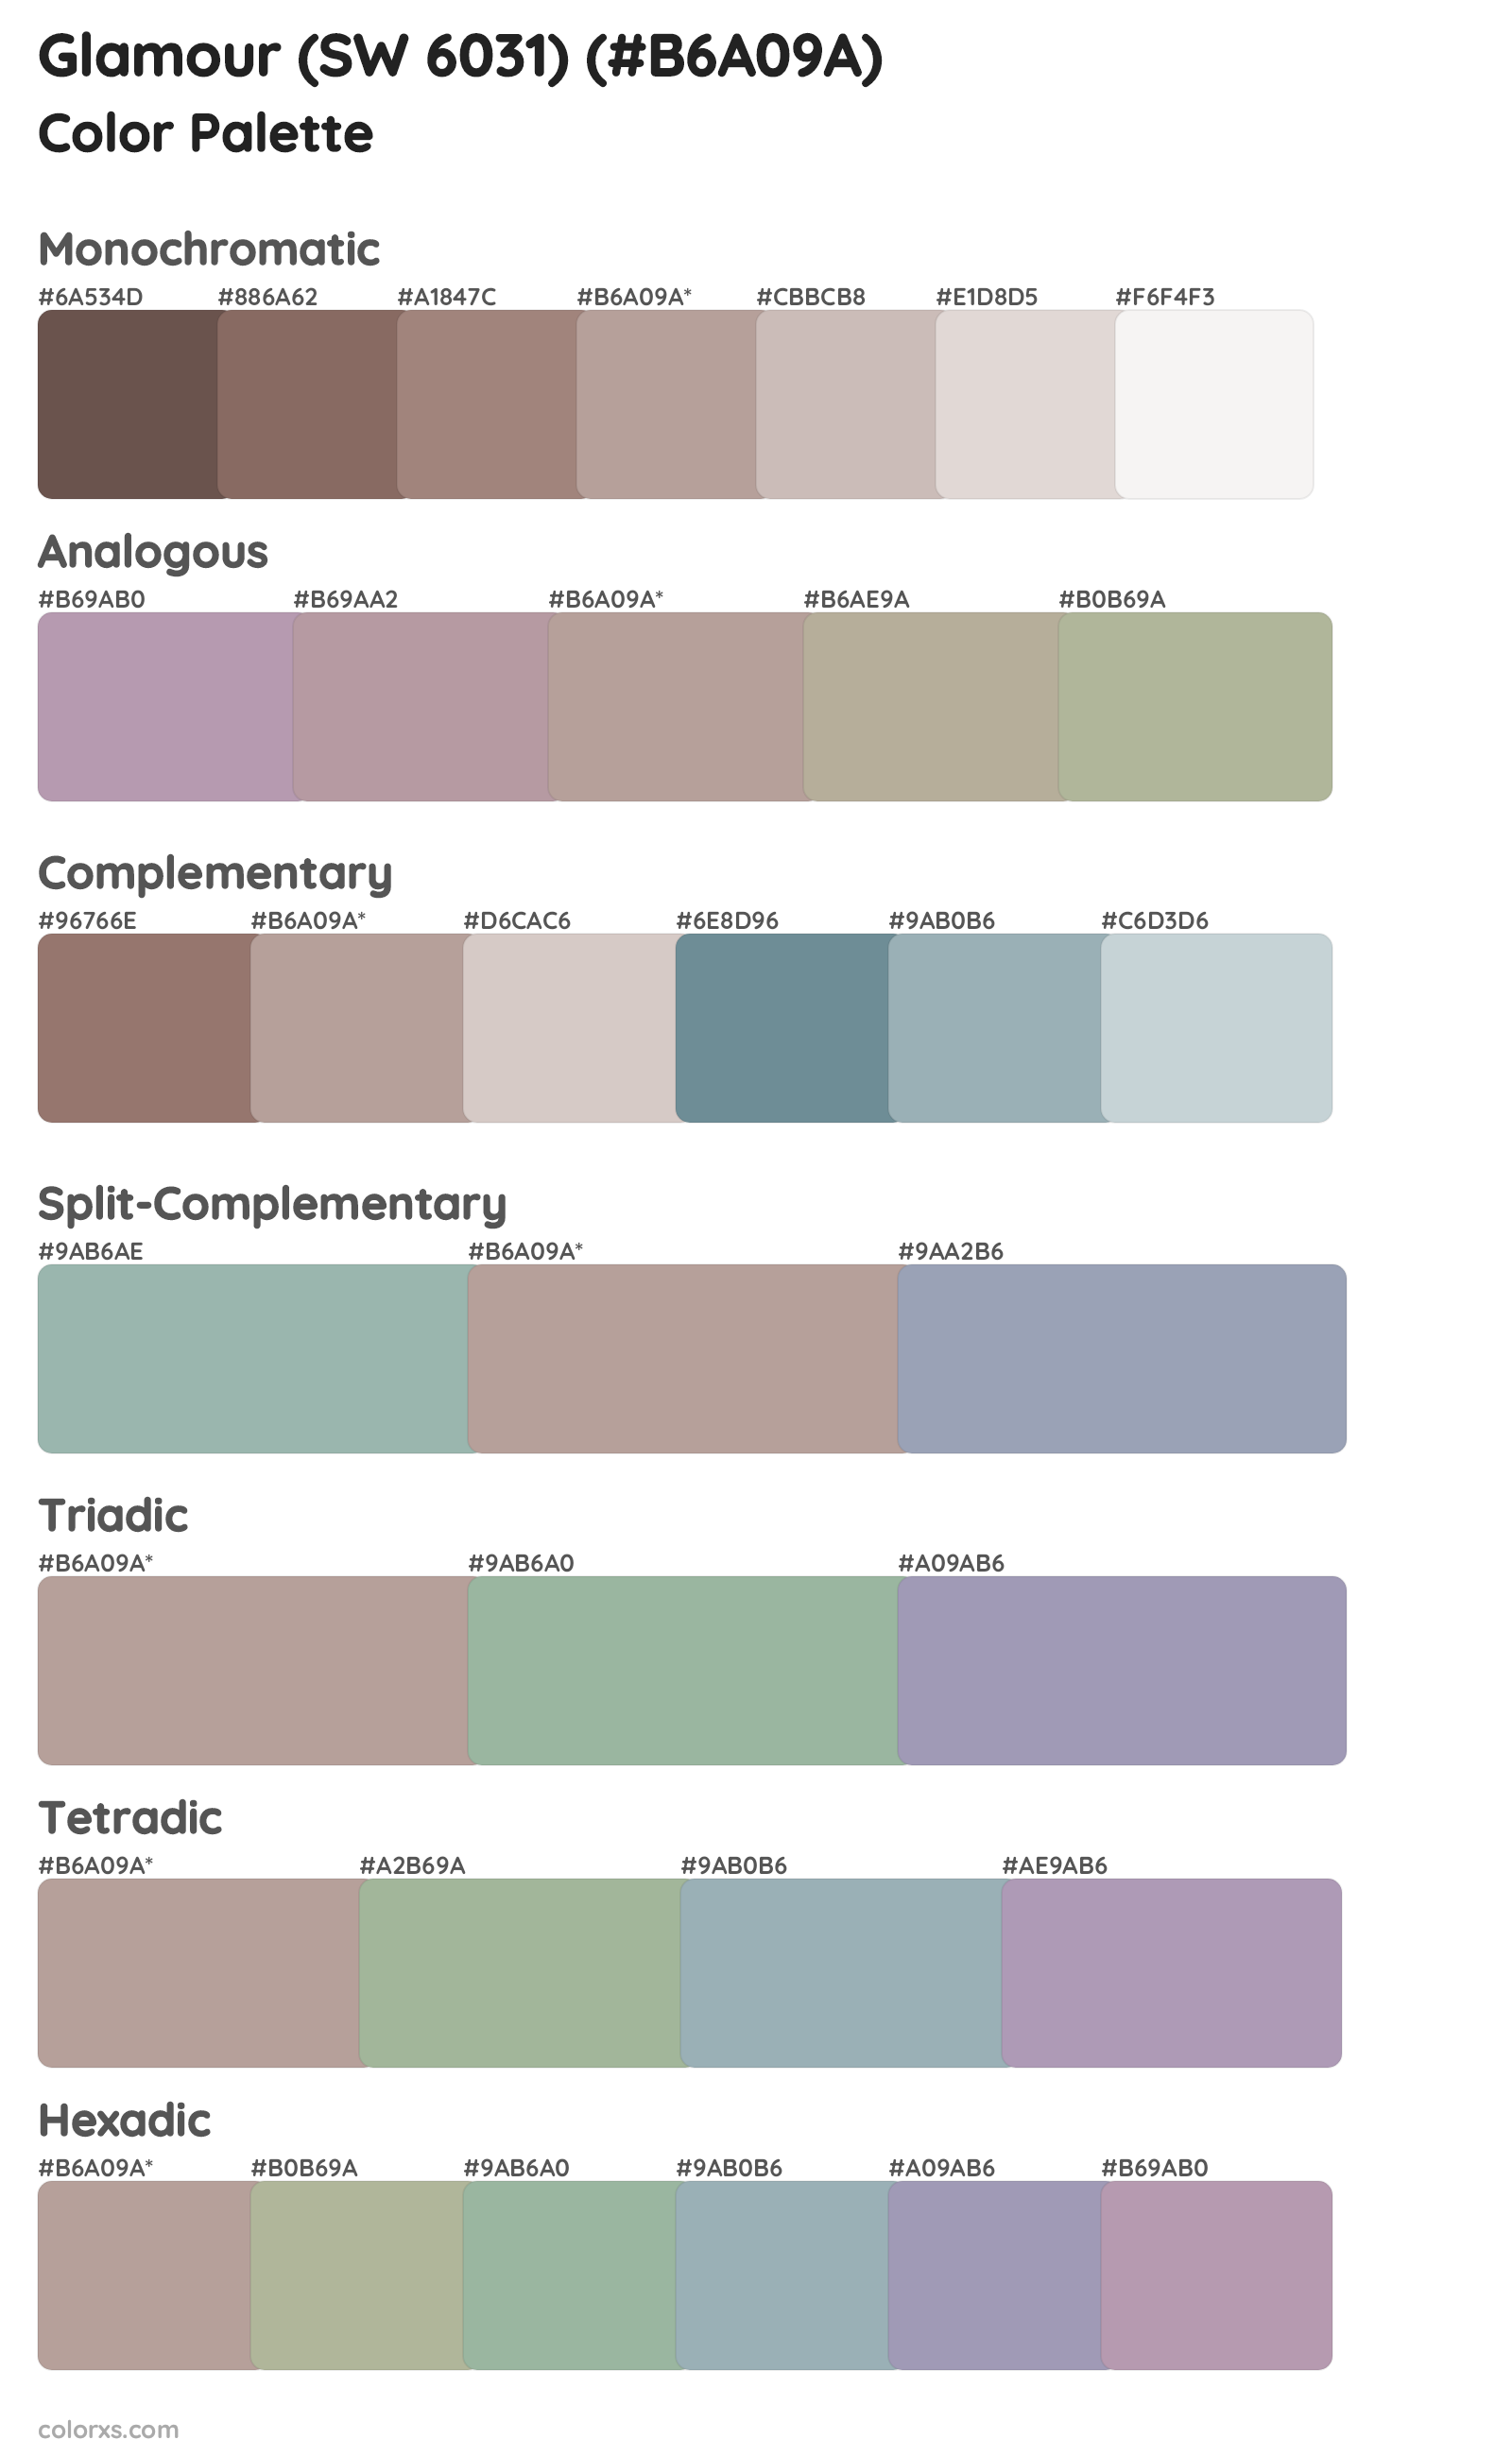 Glamour (SW 6031) Color Scheme Palettes